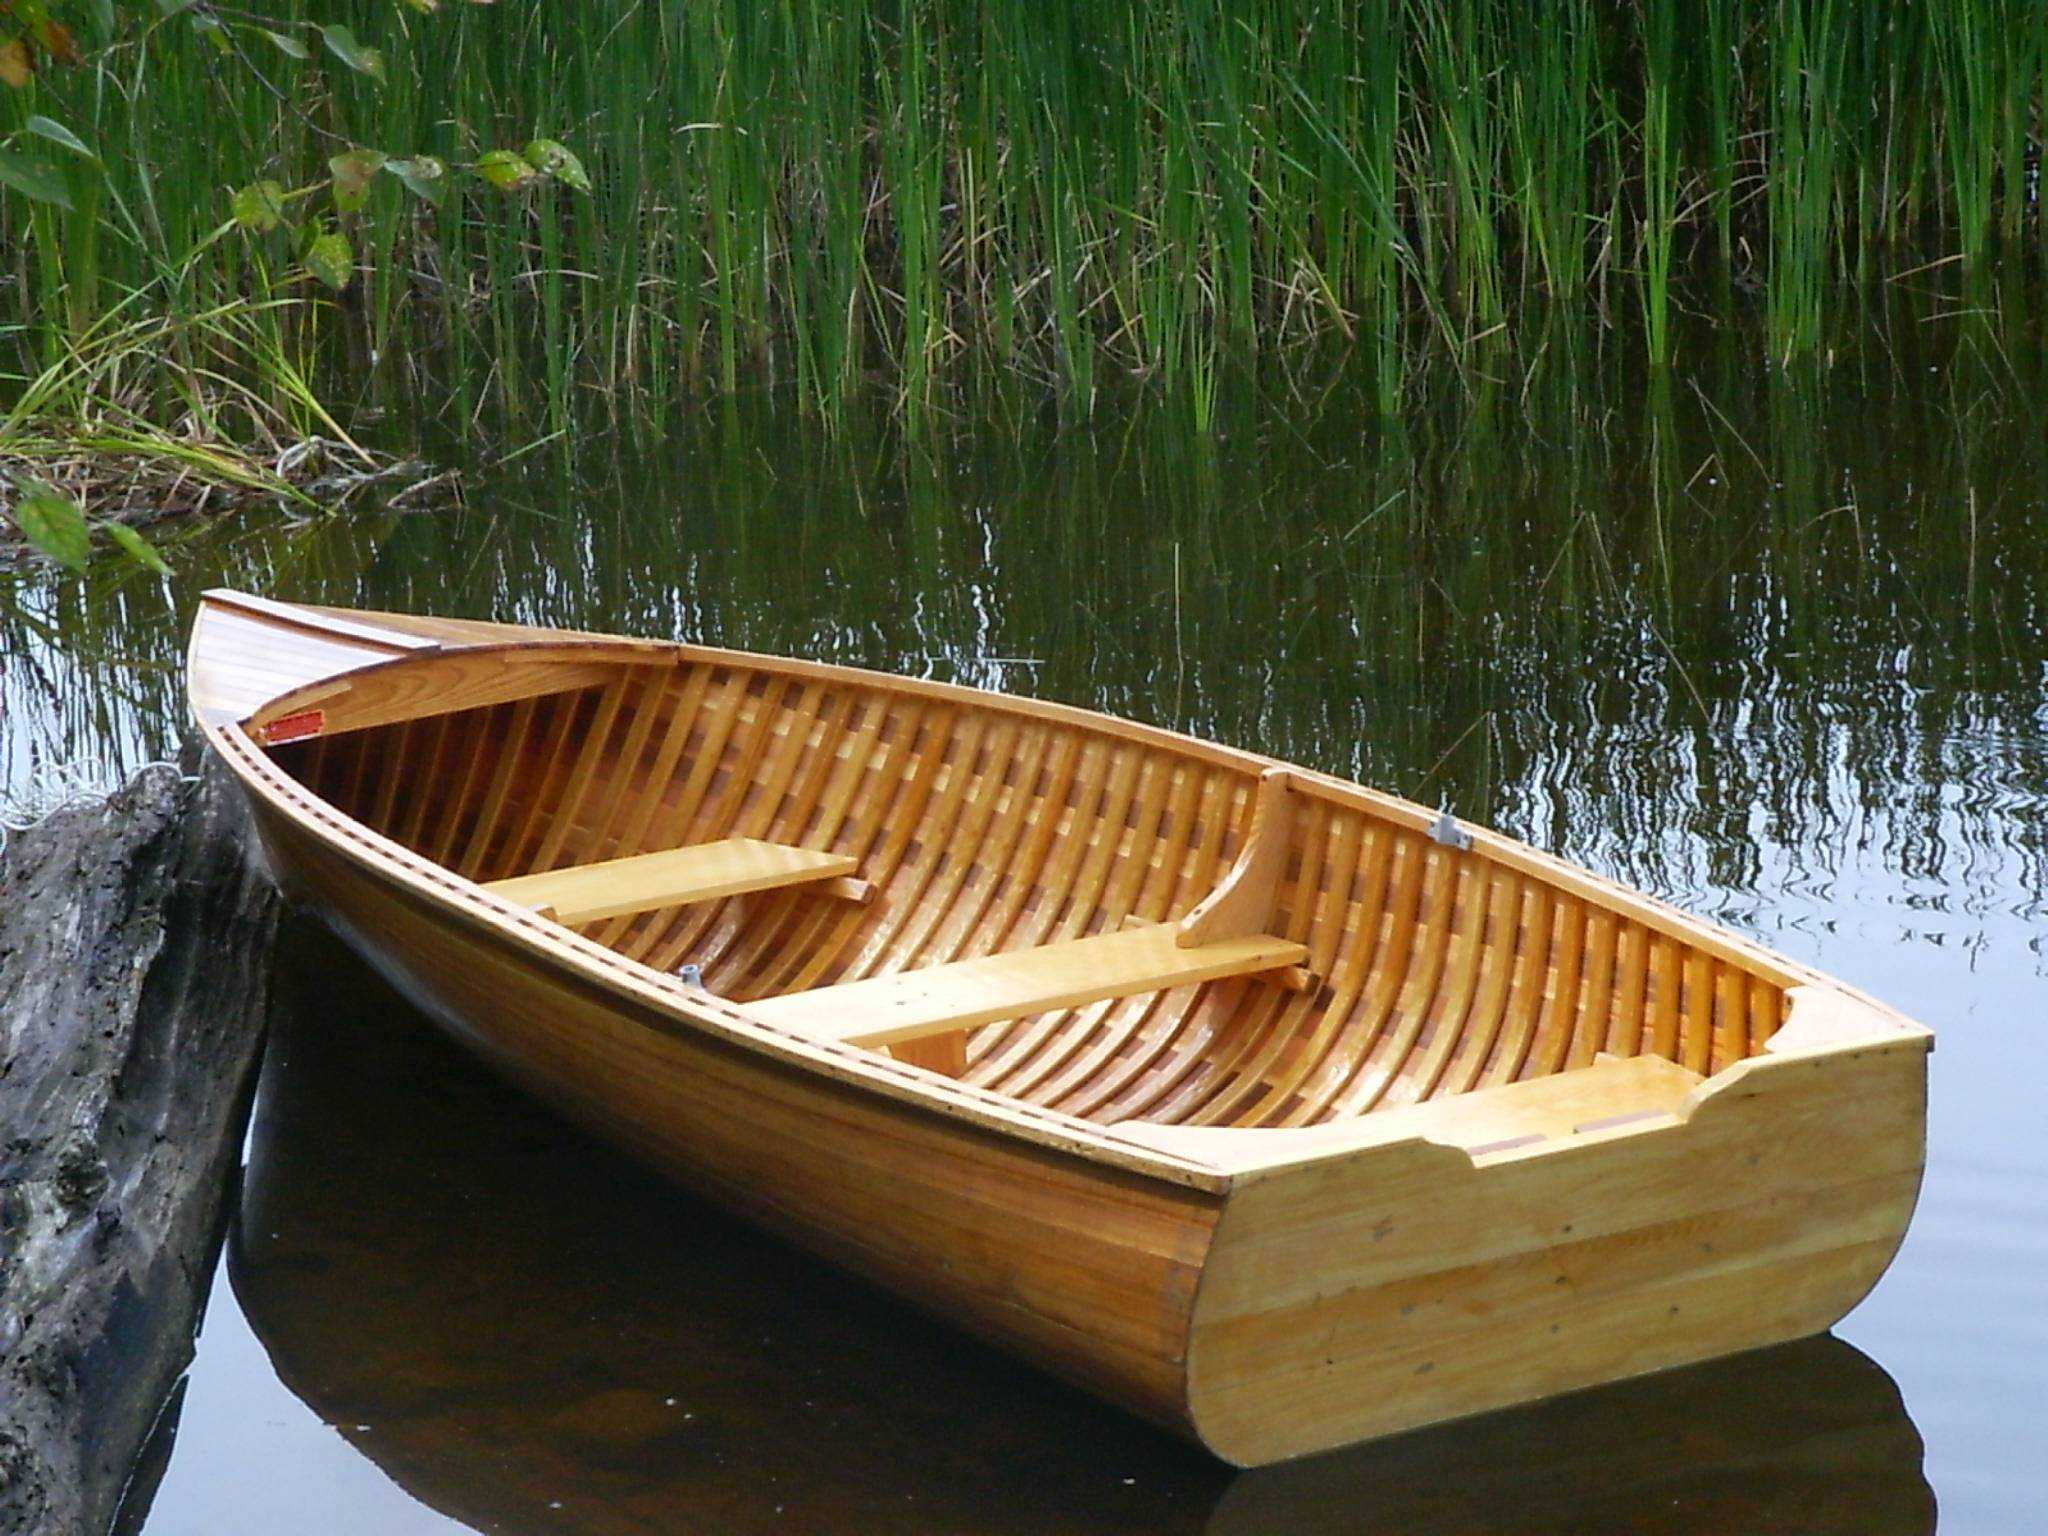 Рейтинг надувных лодок: 23 лучшие модели для рыбалки